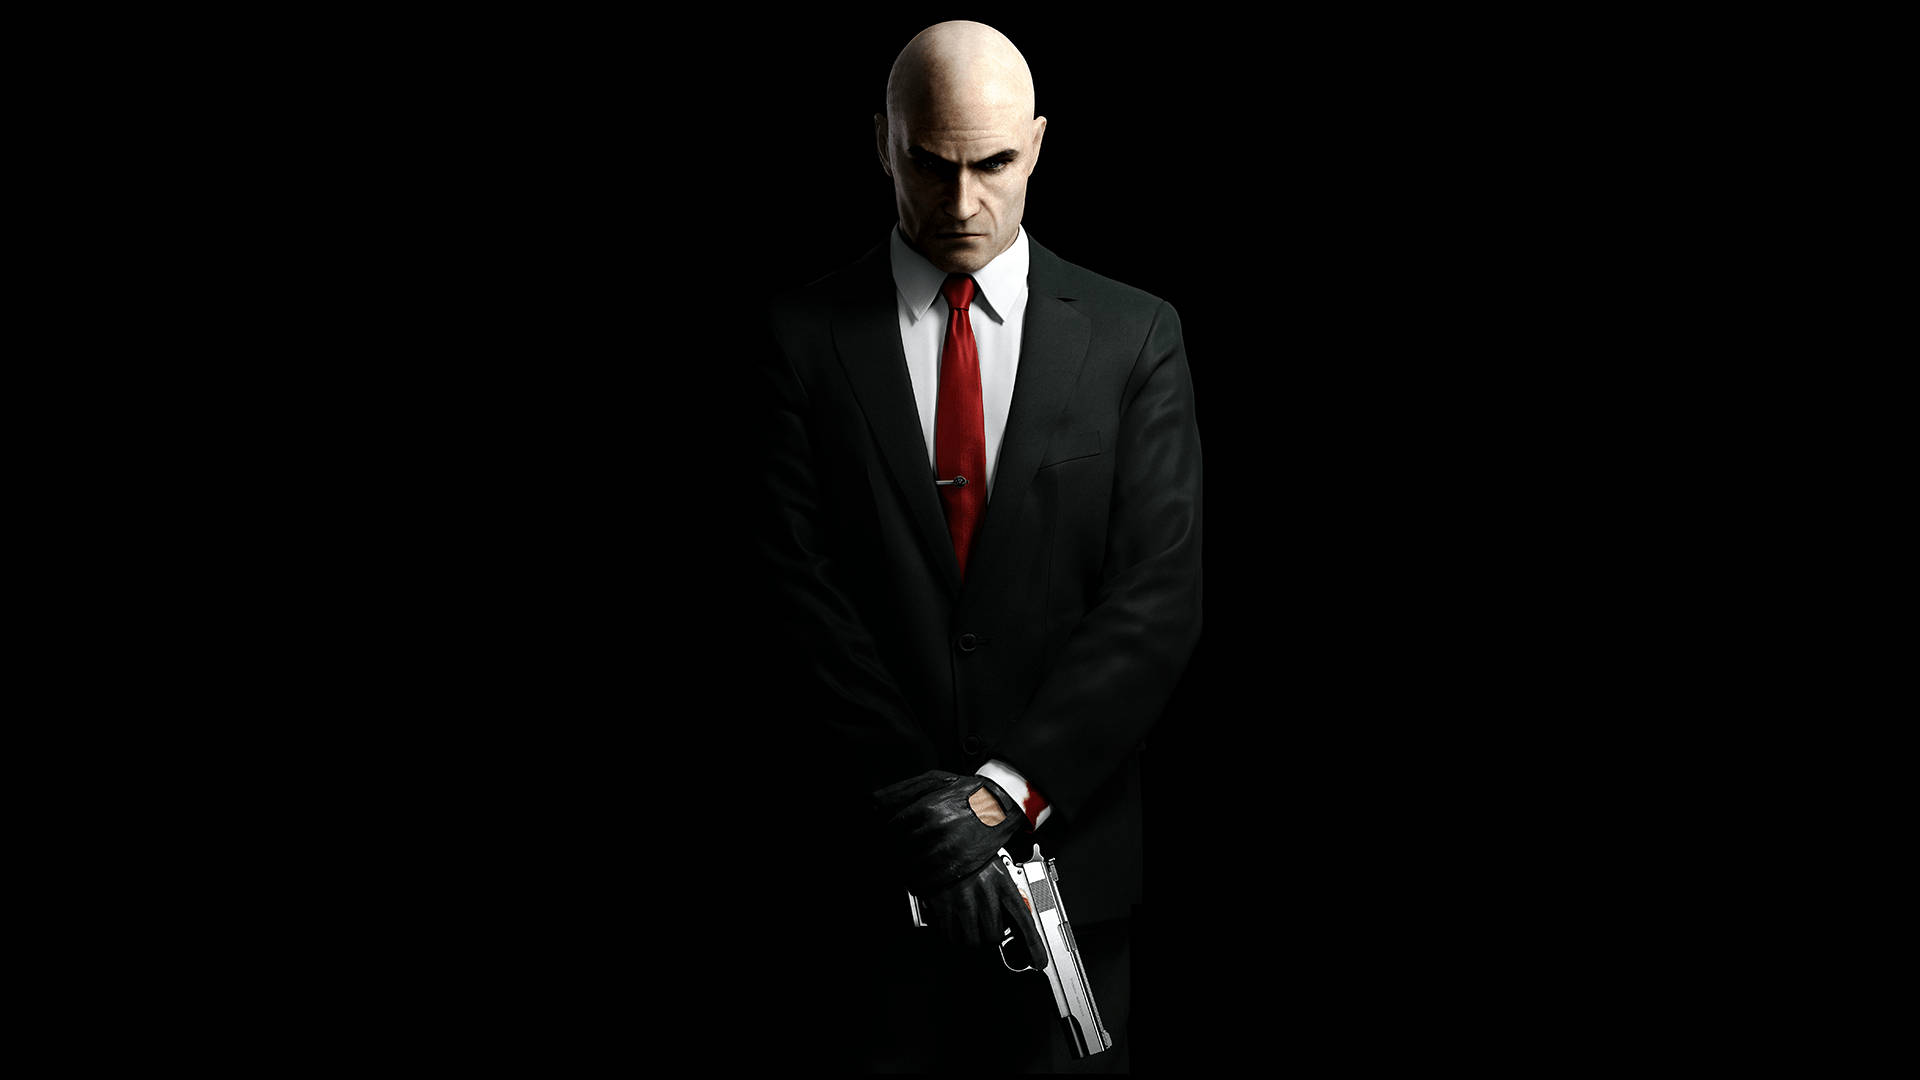 Verkligahitman-datorspelet Agent 47. Wallpaper